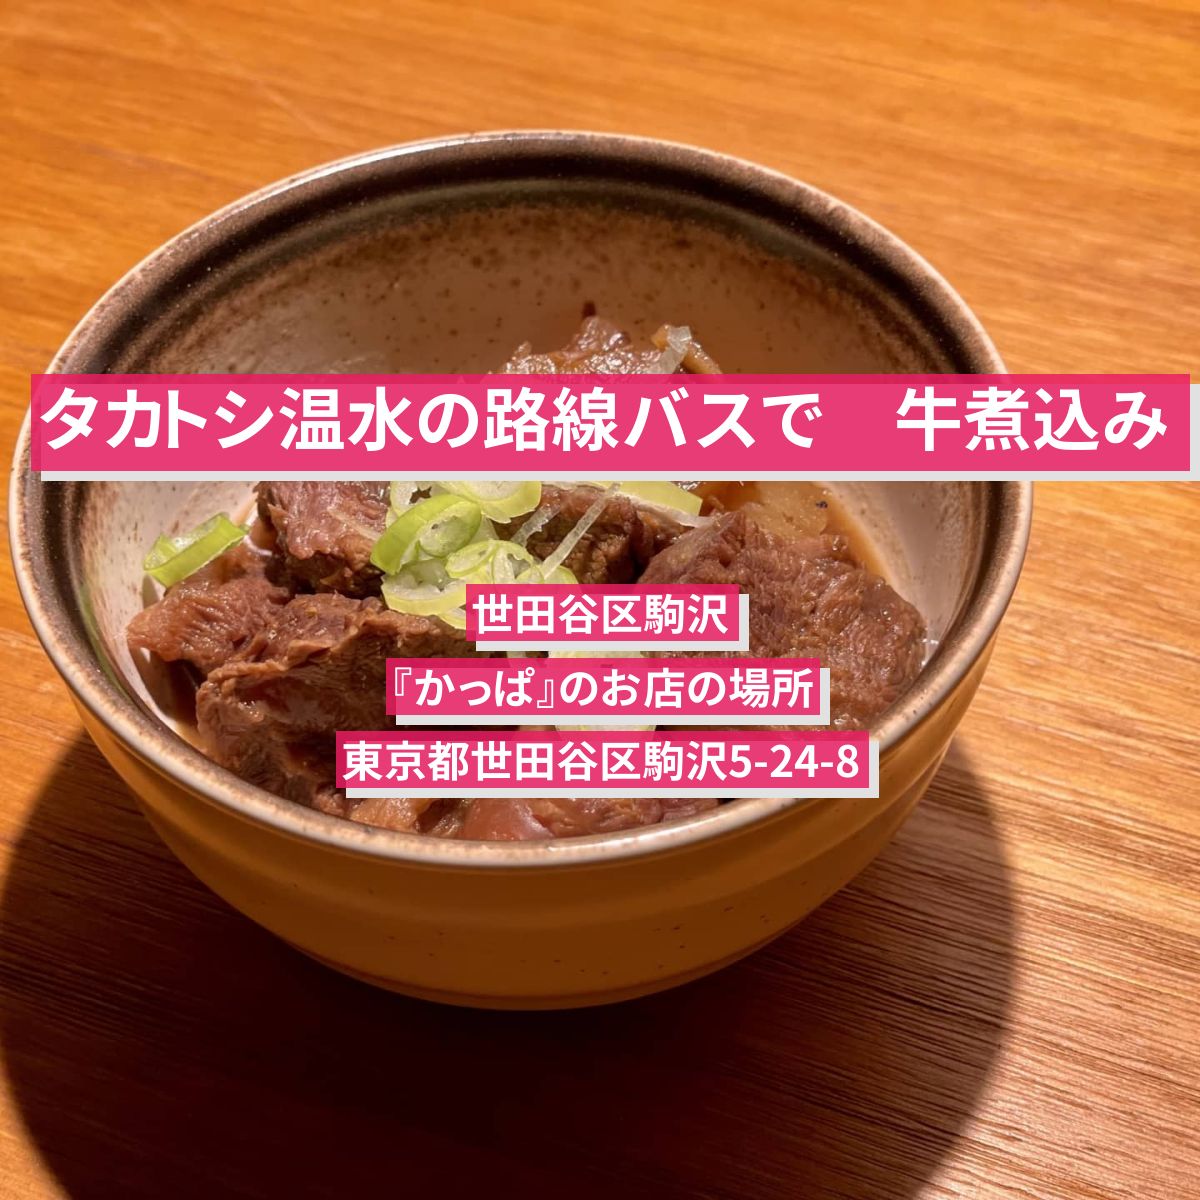 【タカトシ温水の路線バスで】牛煮込み　世田谷区駒沢『かっぱ』のお店の場所